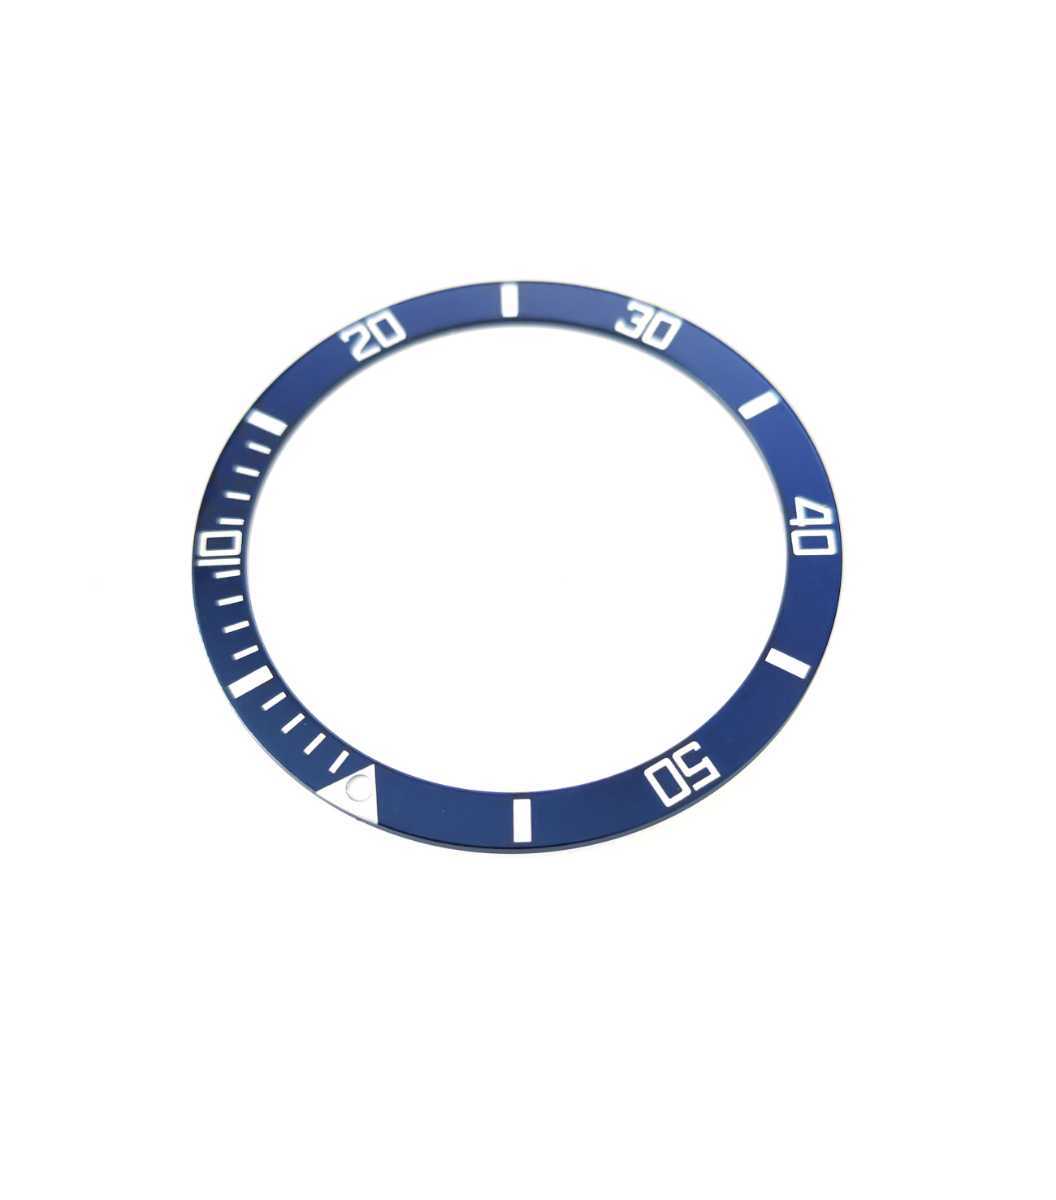  наручные часы ремонт для замены фирма внешний товар aluminium оправа вставка сиденье синий blue вспомогательный [ соответствует ] Seiko SRP773/775/777/779 и т.п. ta-toru Sard 